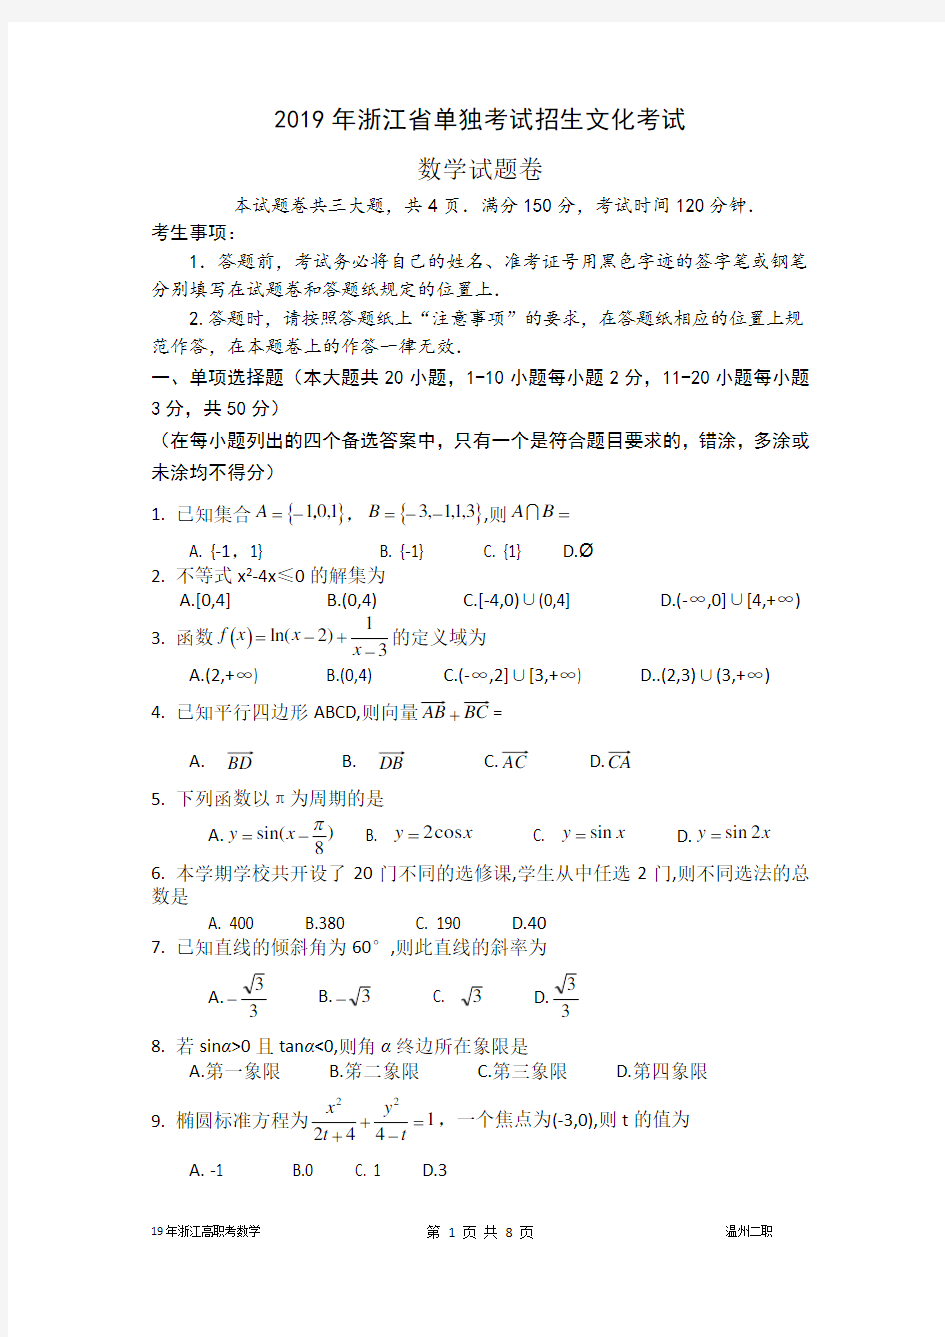 (完整版)2019年浙江高职考数学试卷